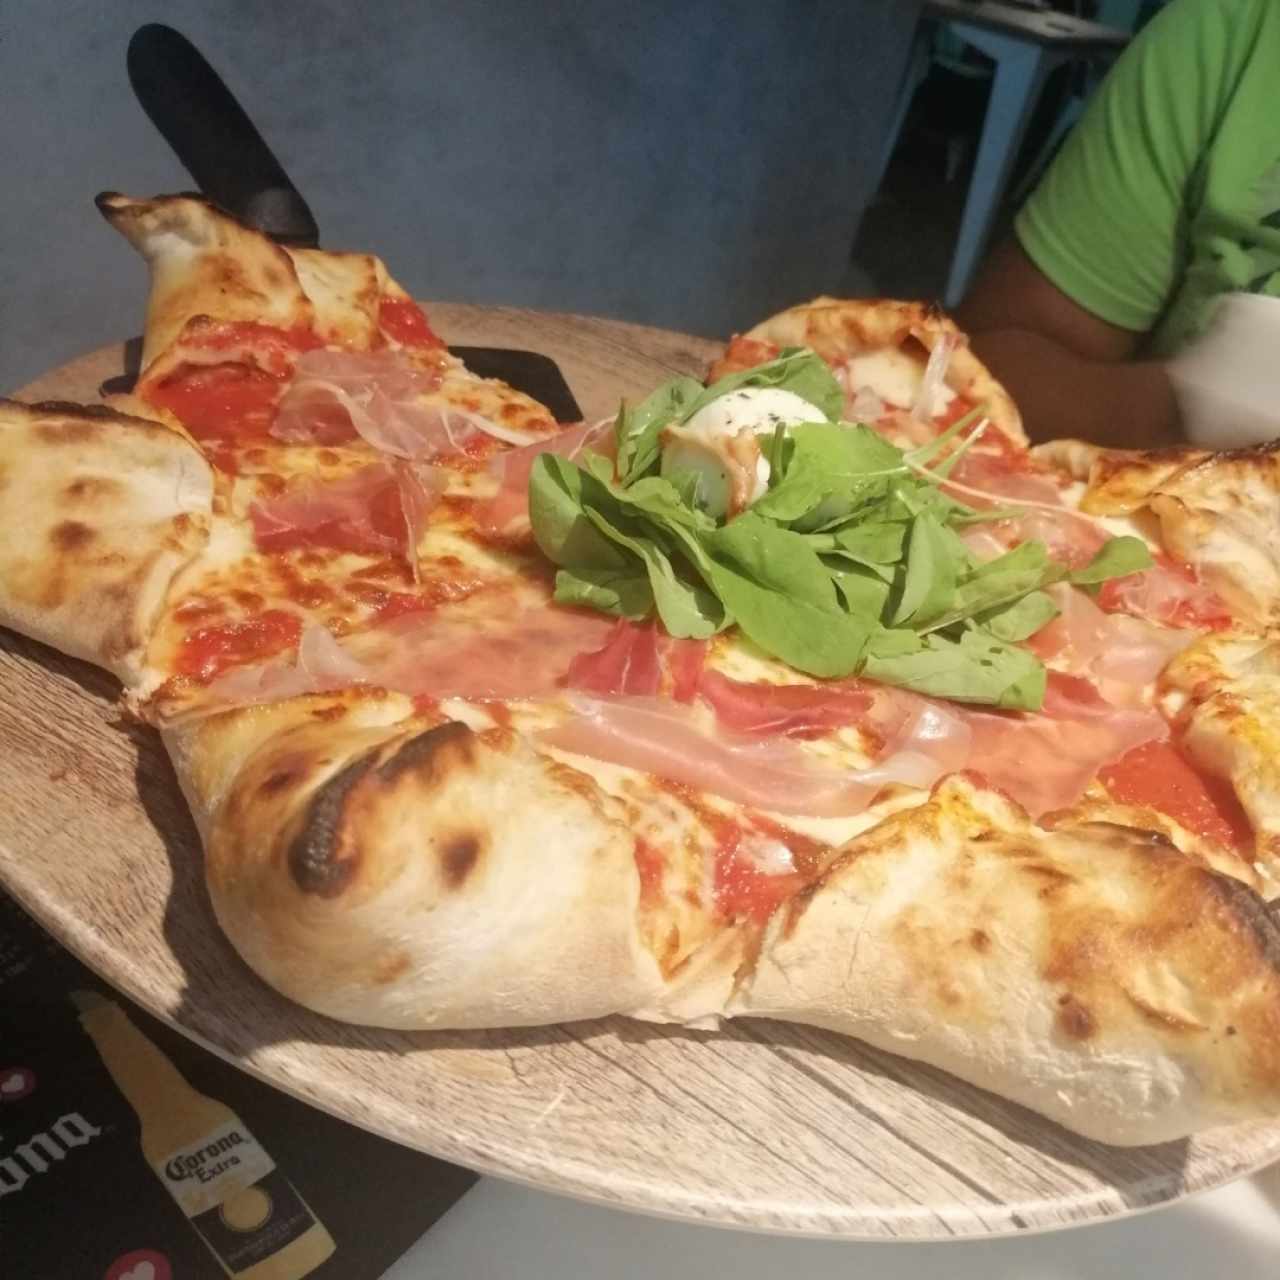 pizza estrella